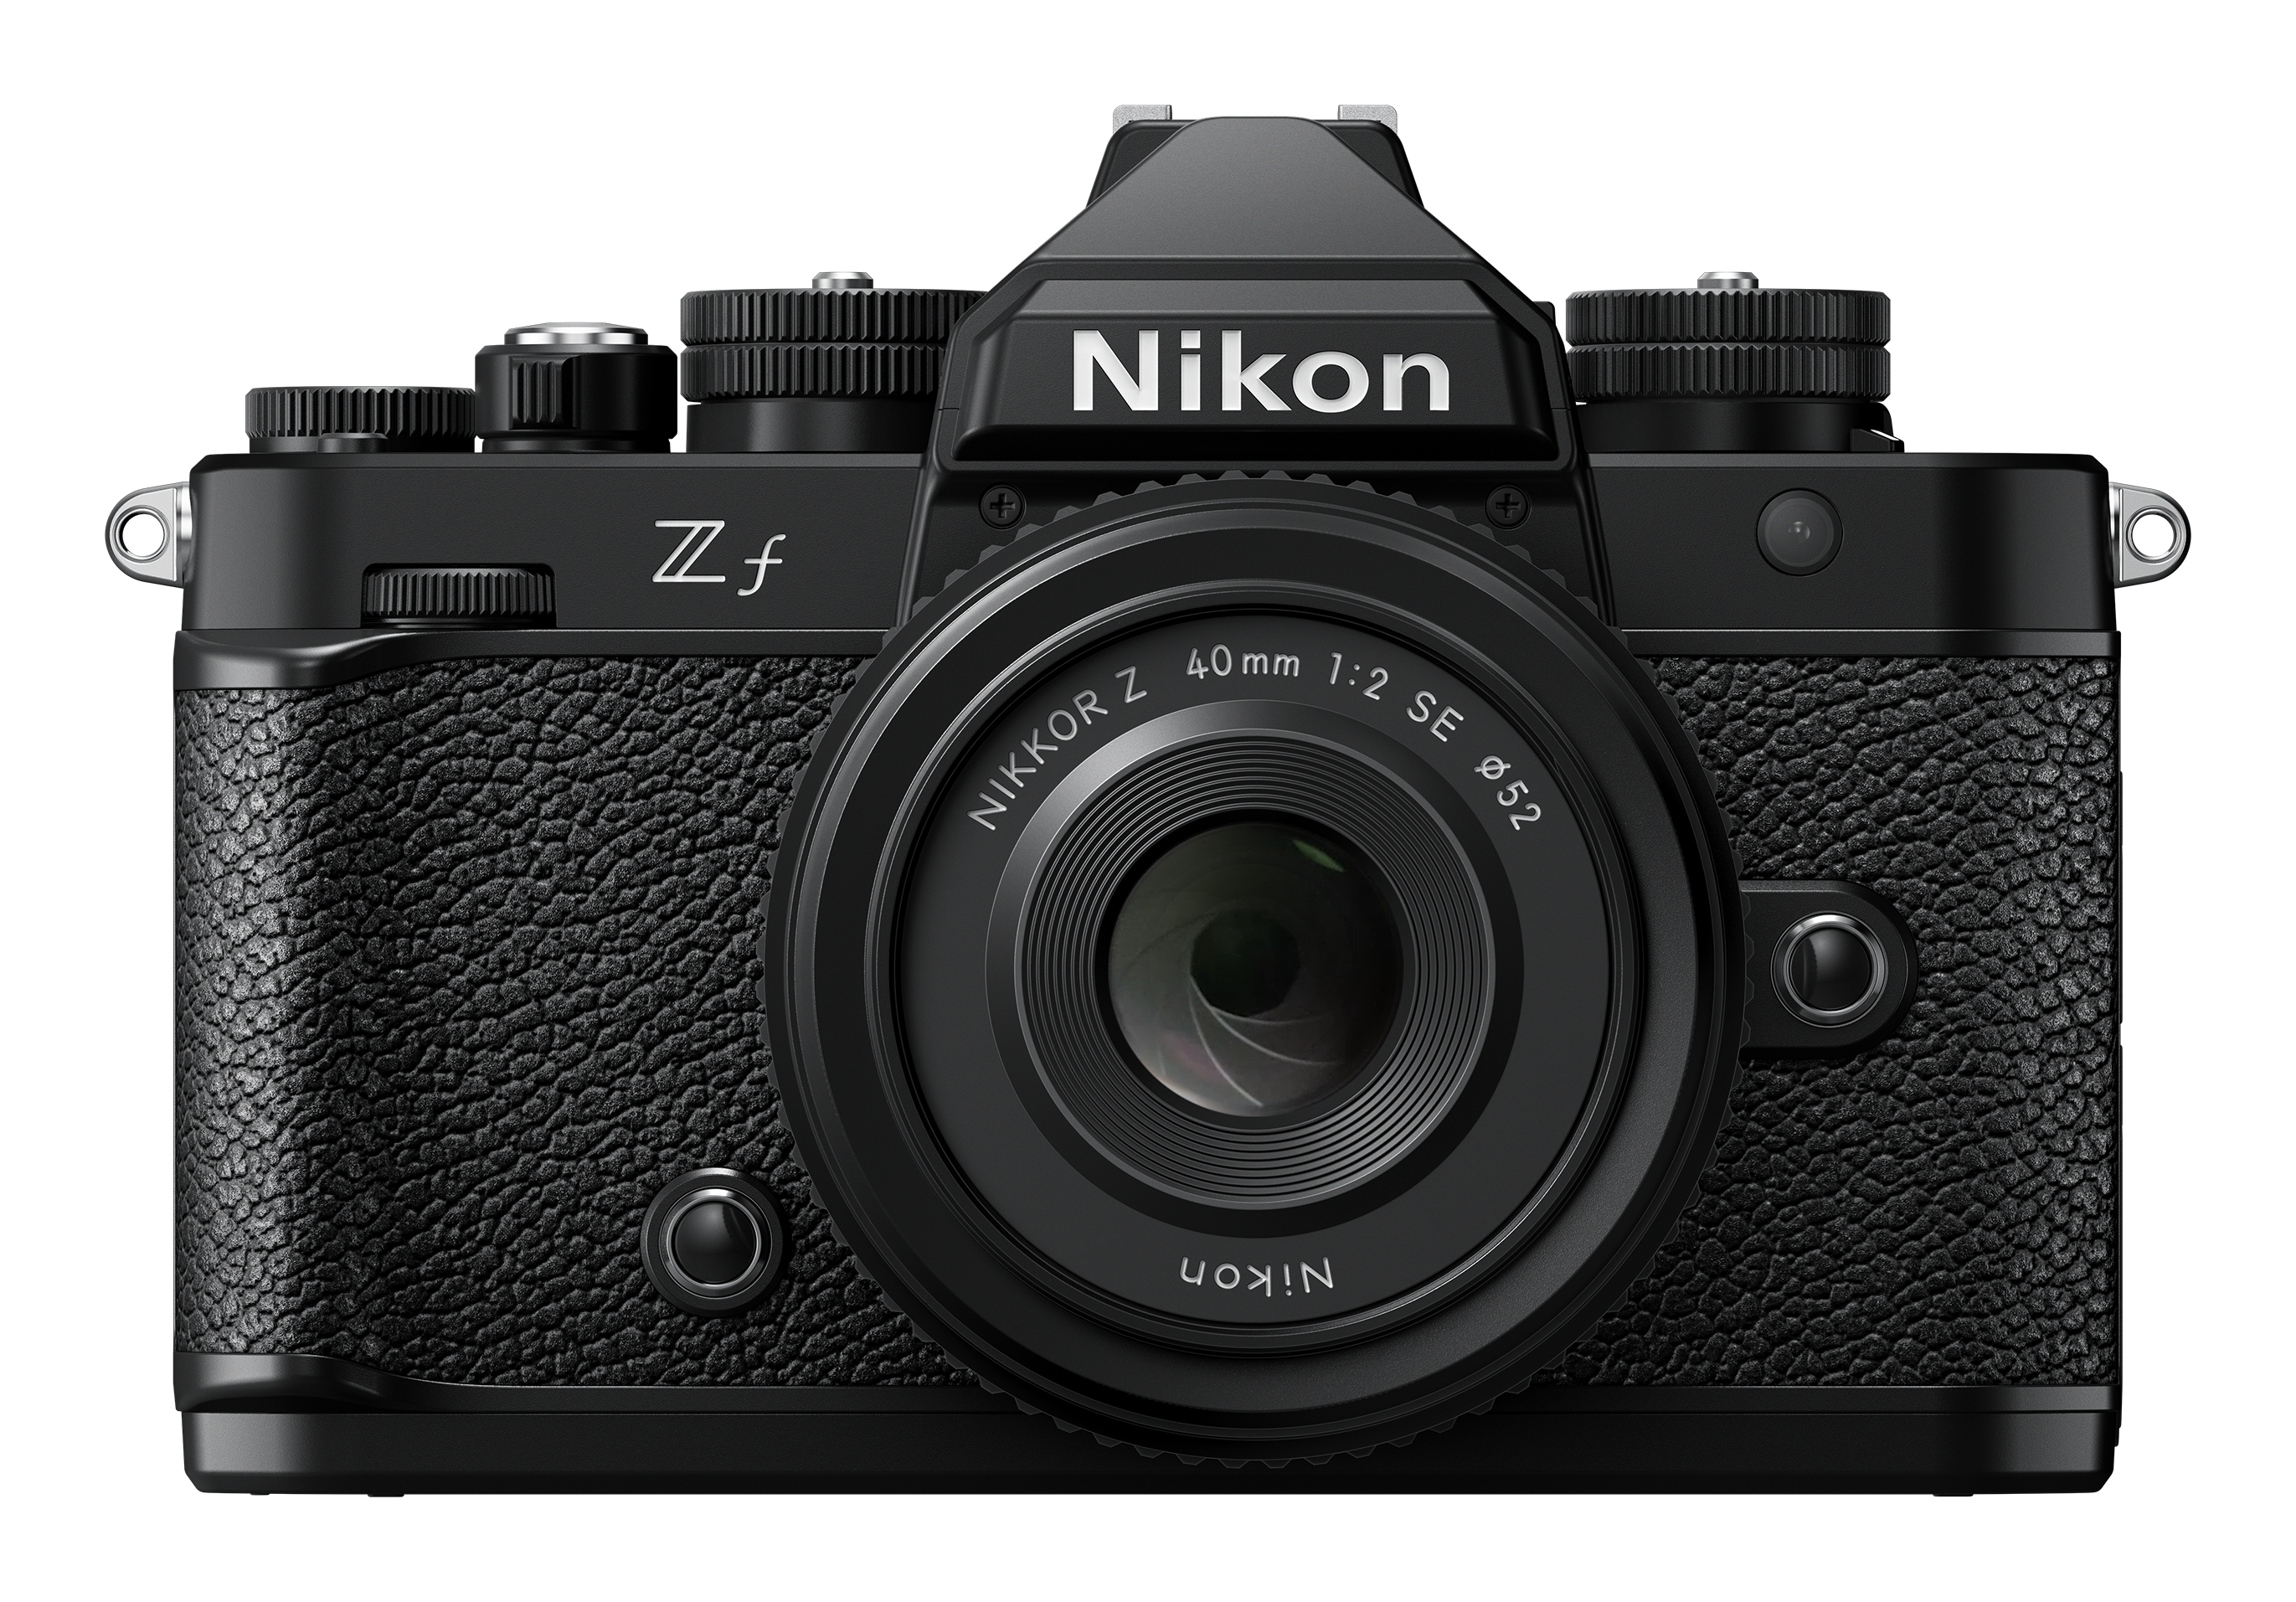 Nikon ZF Body + SD 128GB 667 Pro -Gar. Nital 4 anni - Cine Sud è 47 anni sul mercato! NMZ590